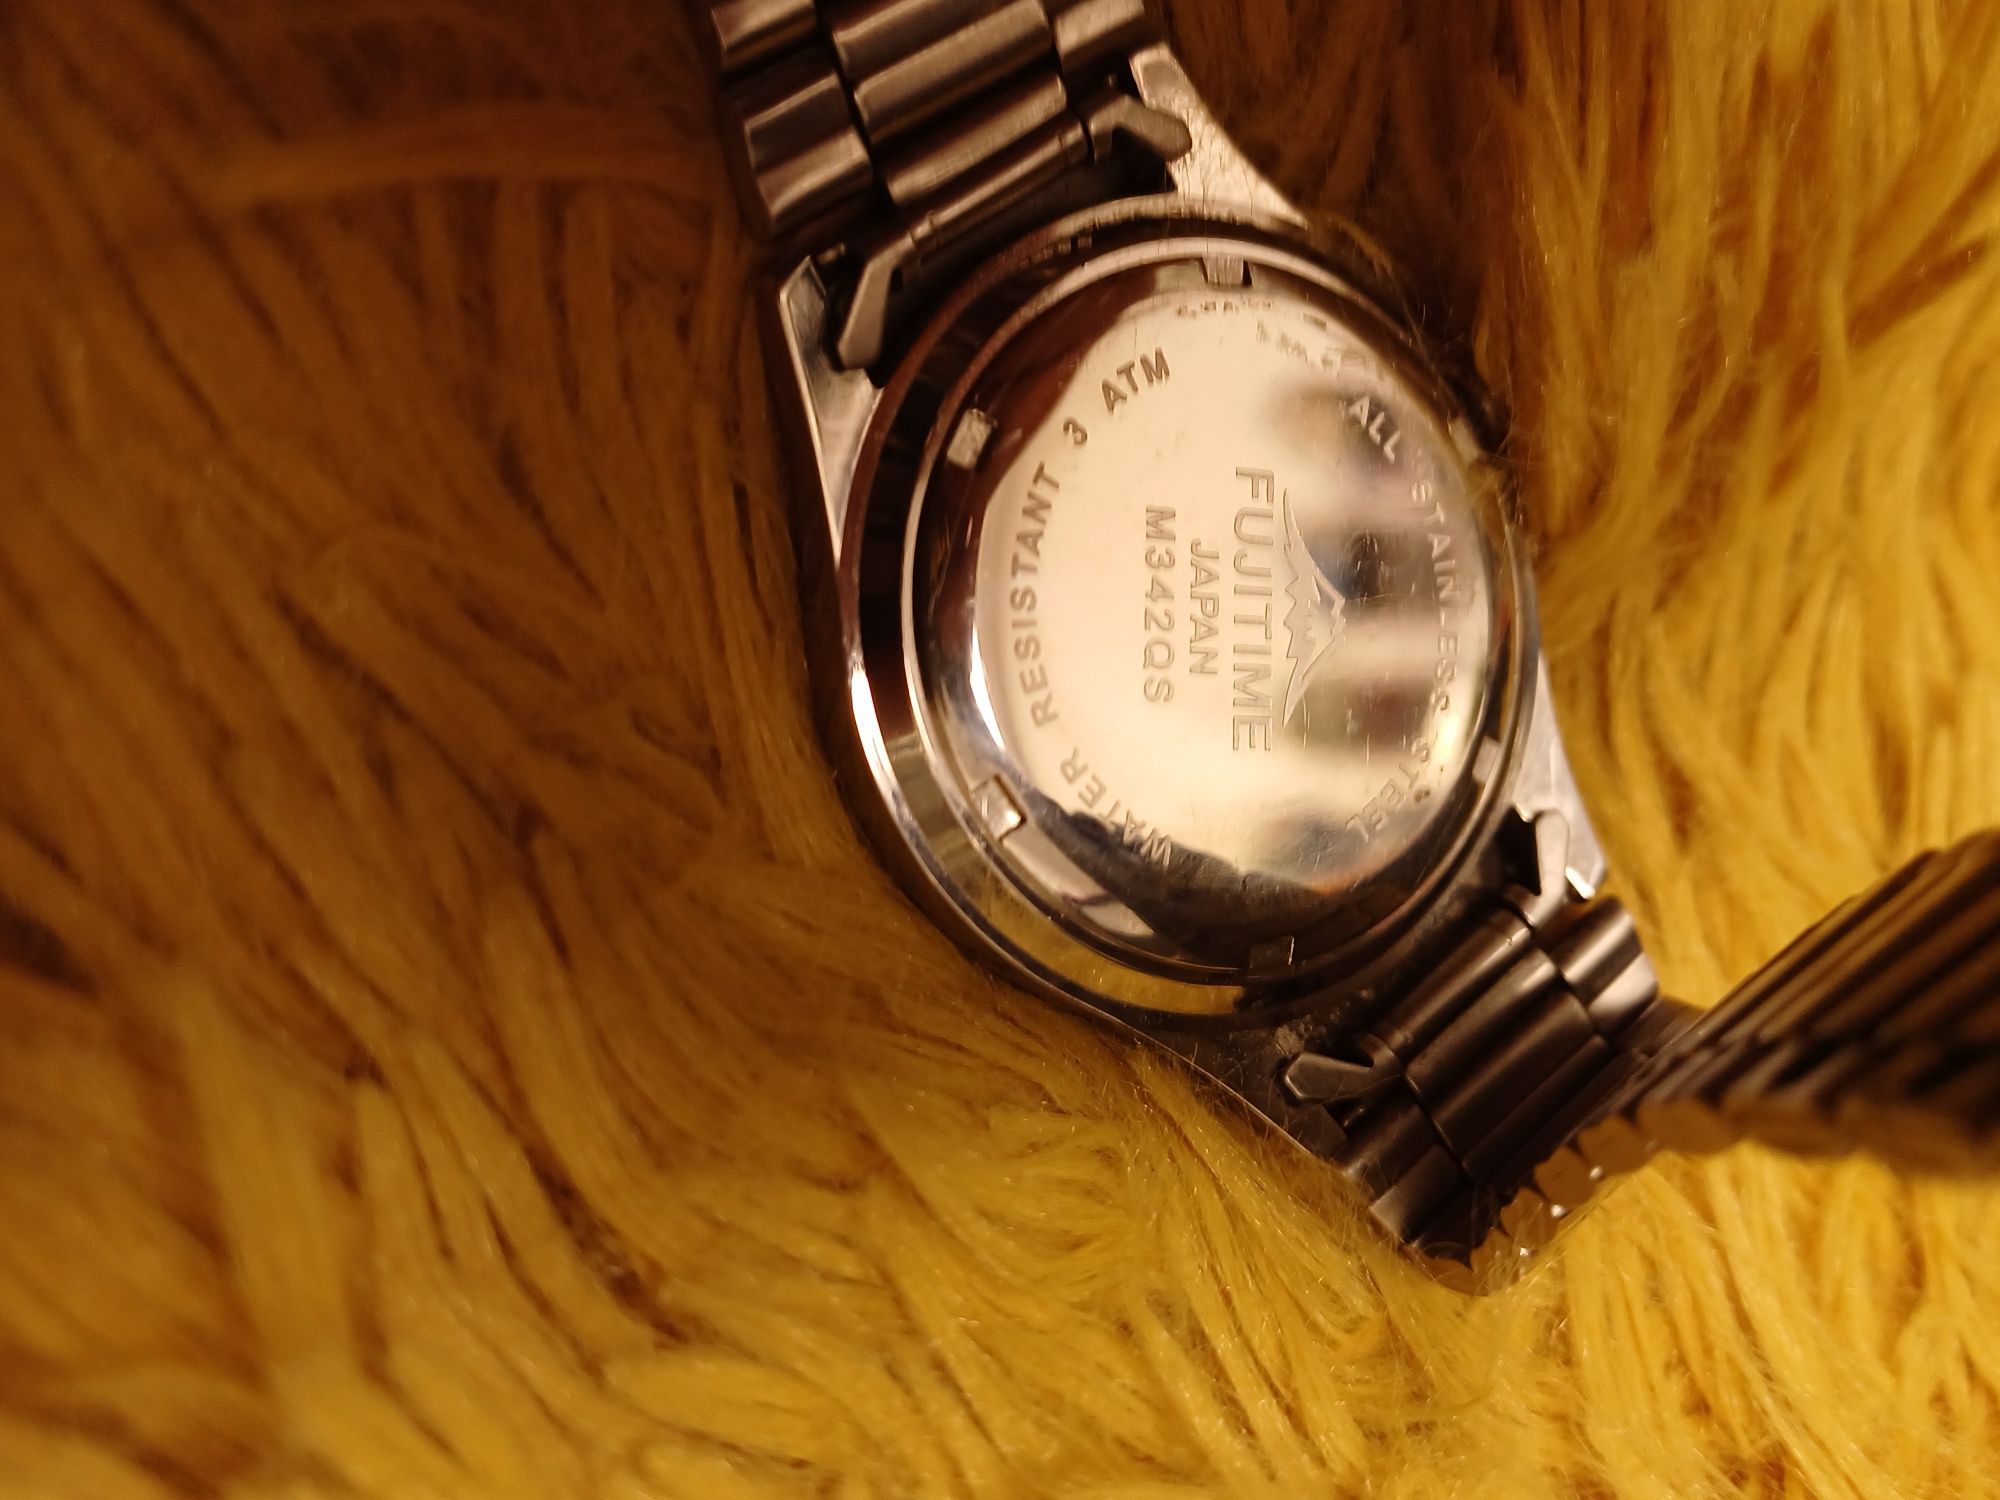 Zegarek Fuji - japoński mechanizm z datą